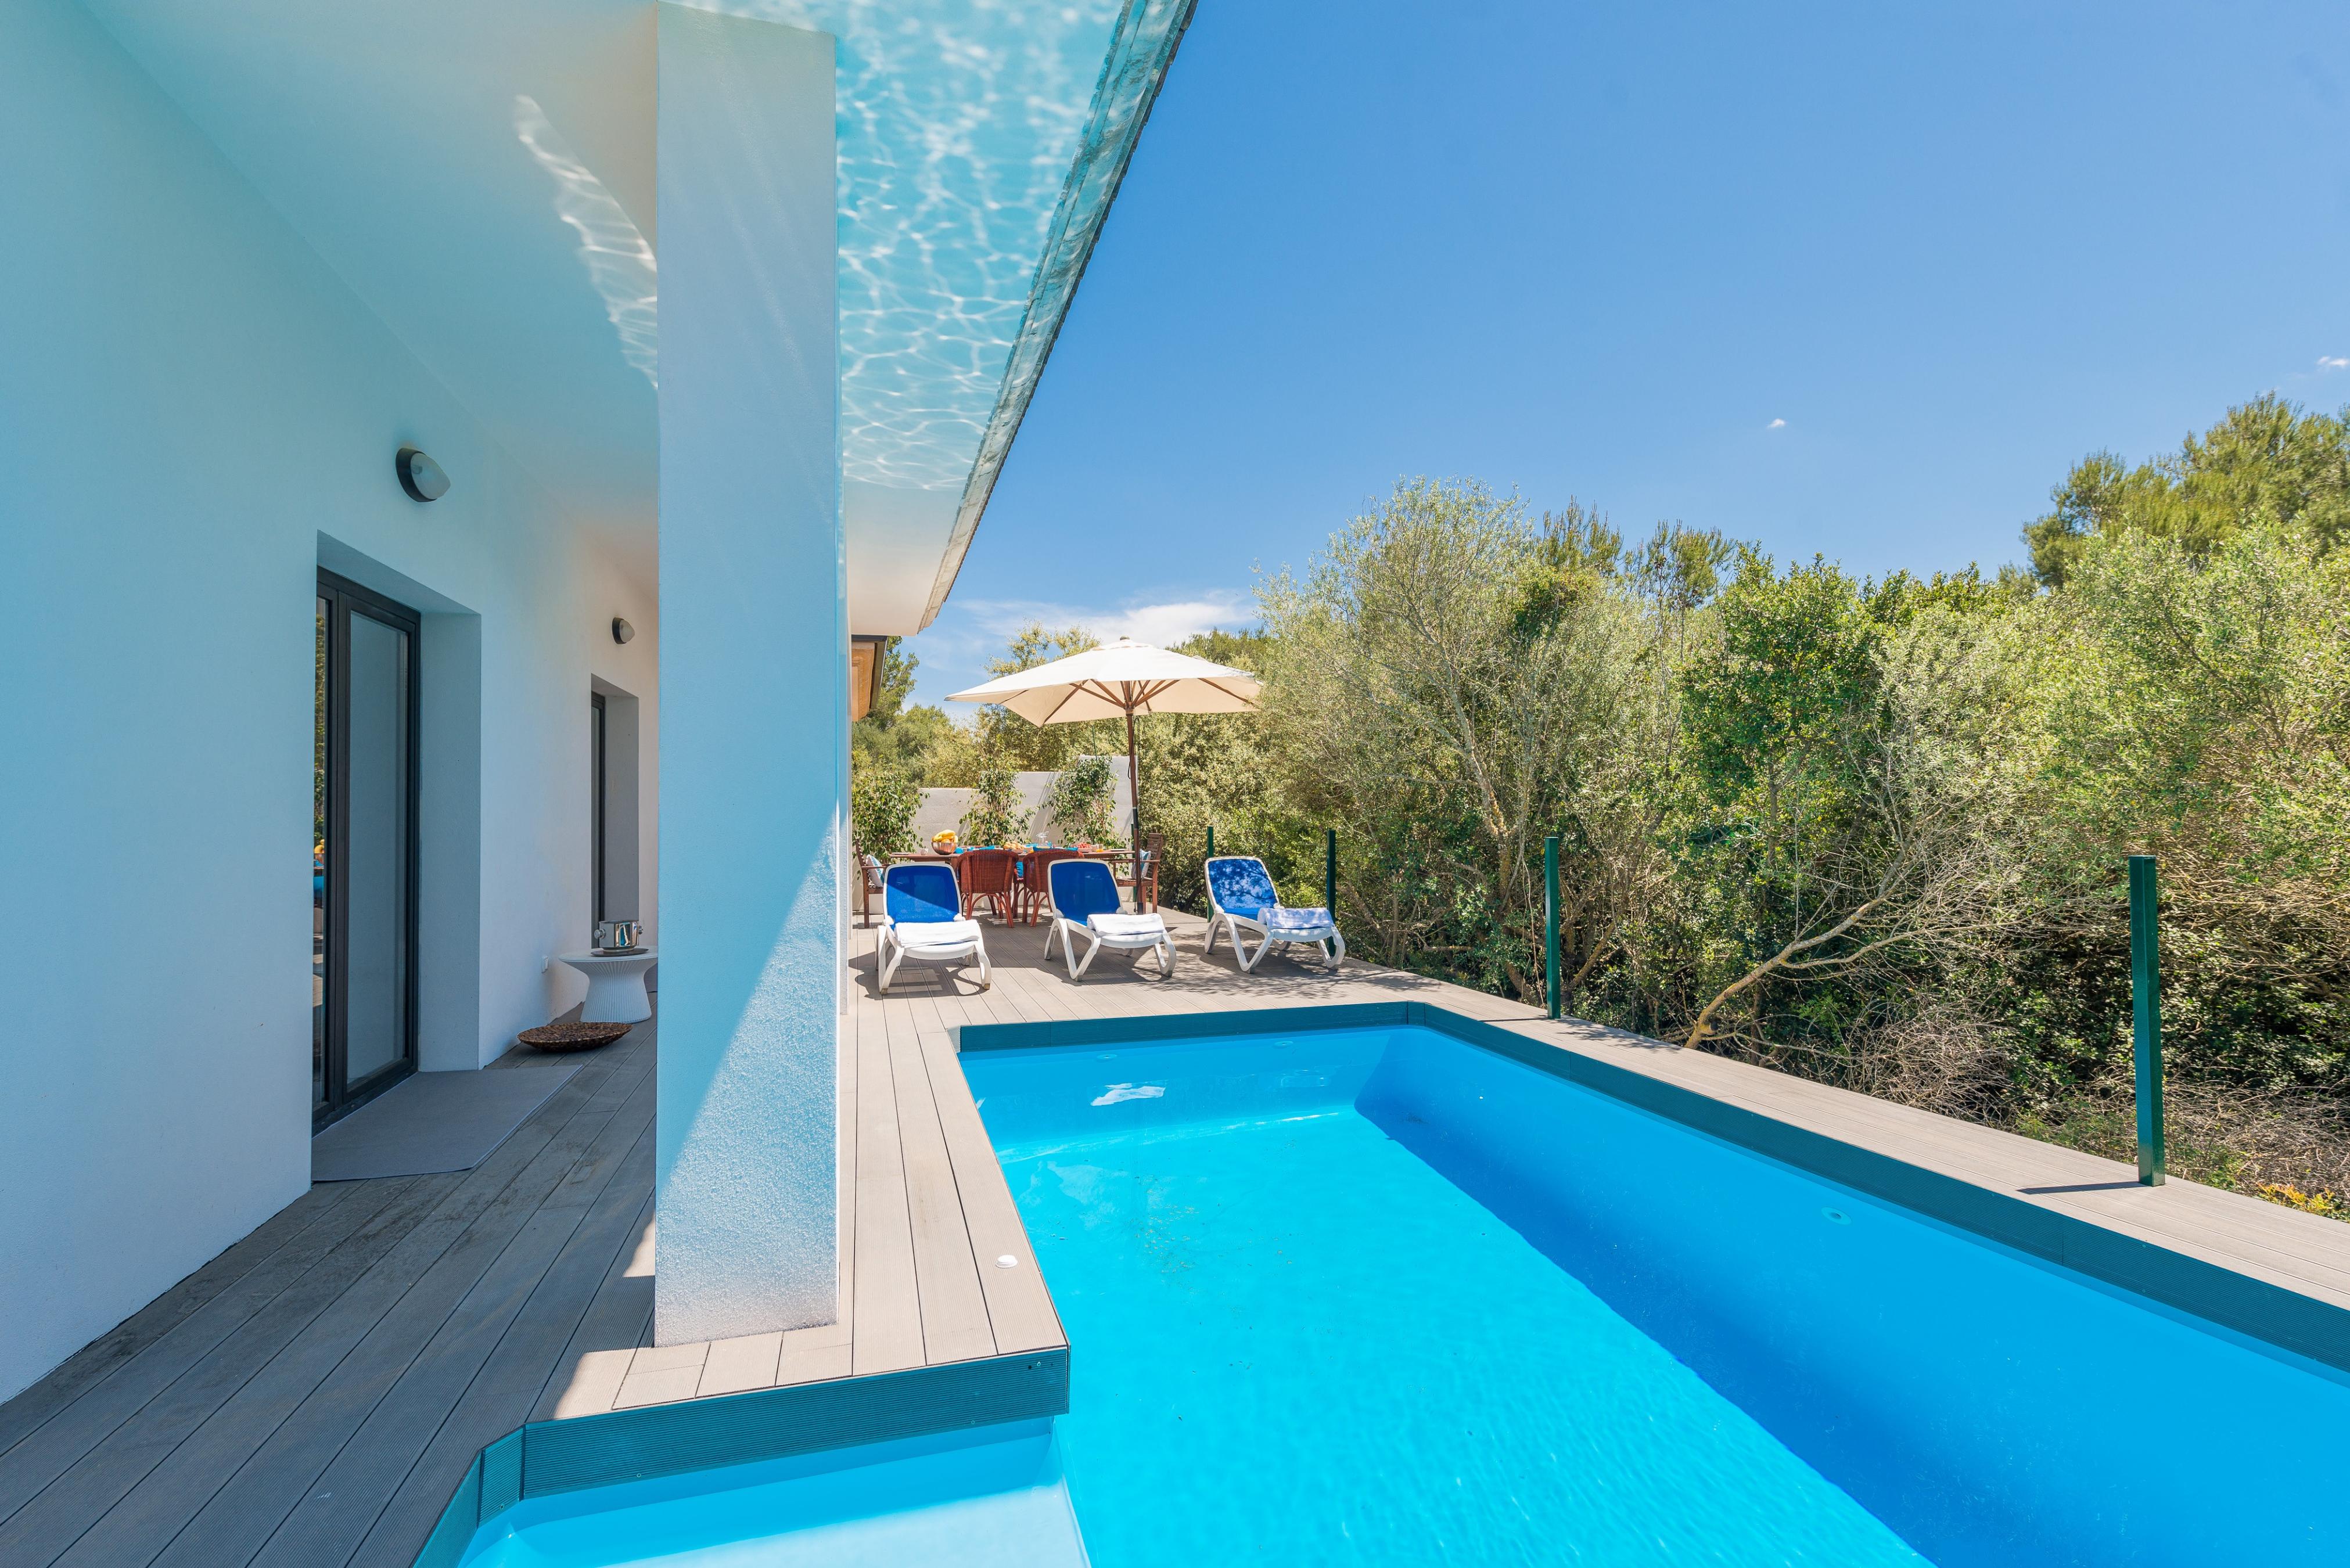 Property Image 2 - VILLA MARINA - Villa with private pool in Son Serra de Marina. Free WiFi